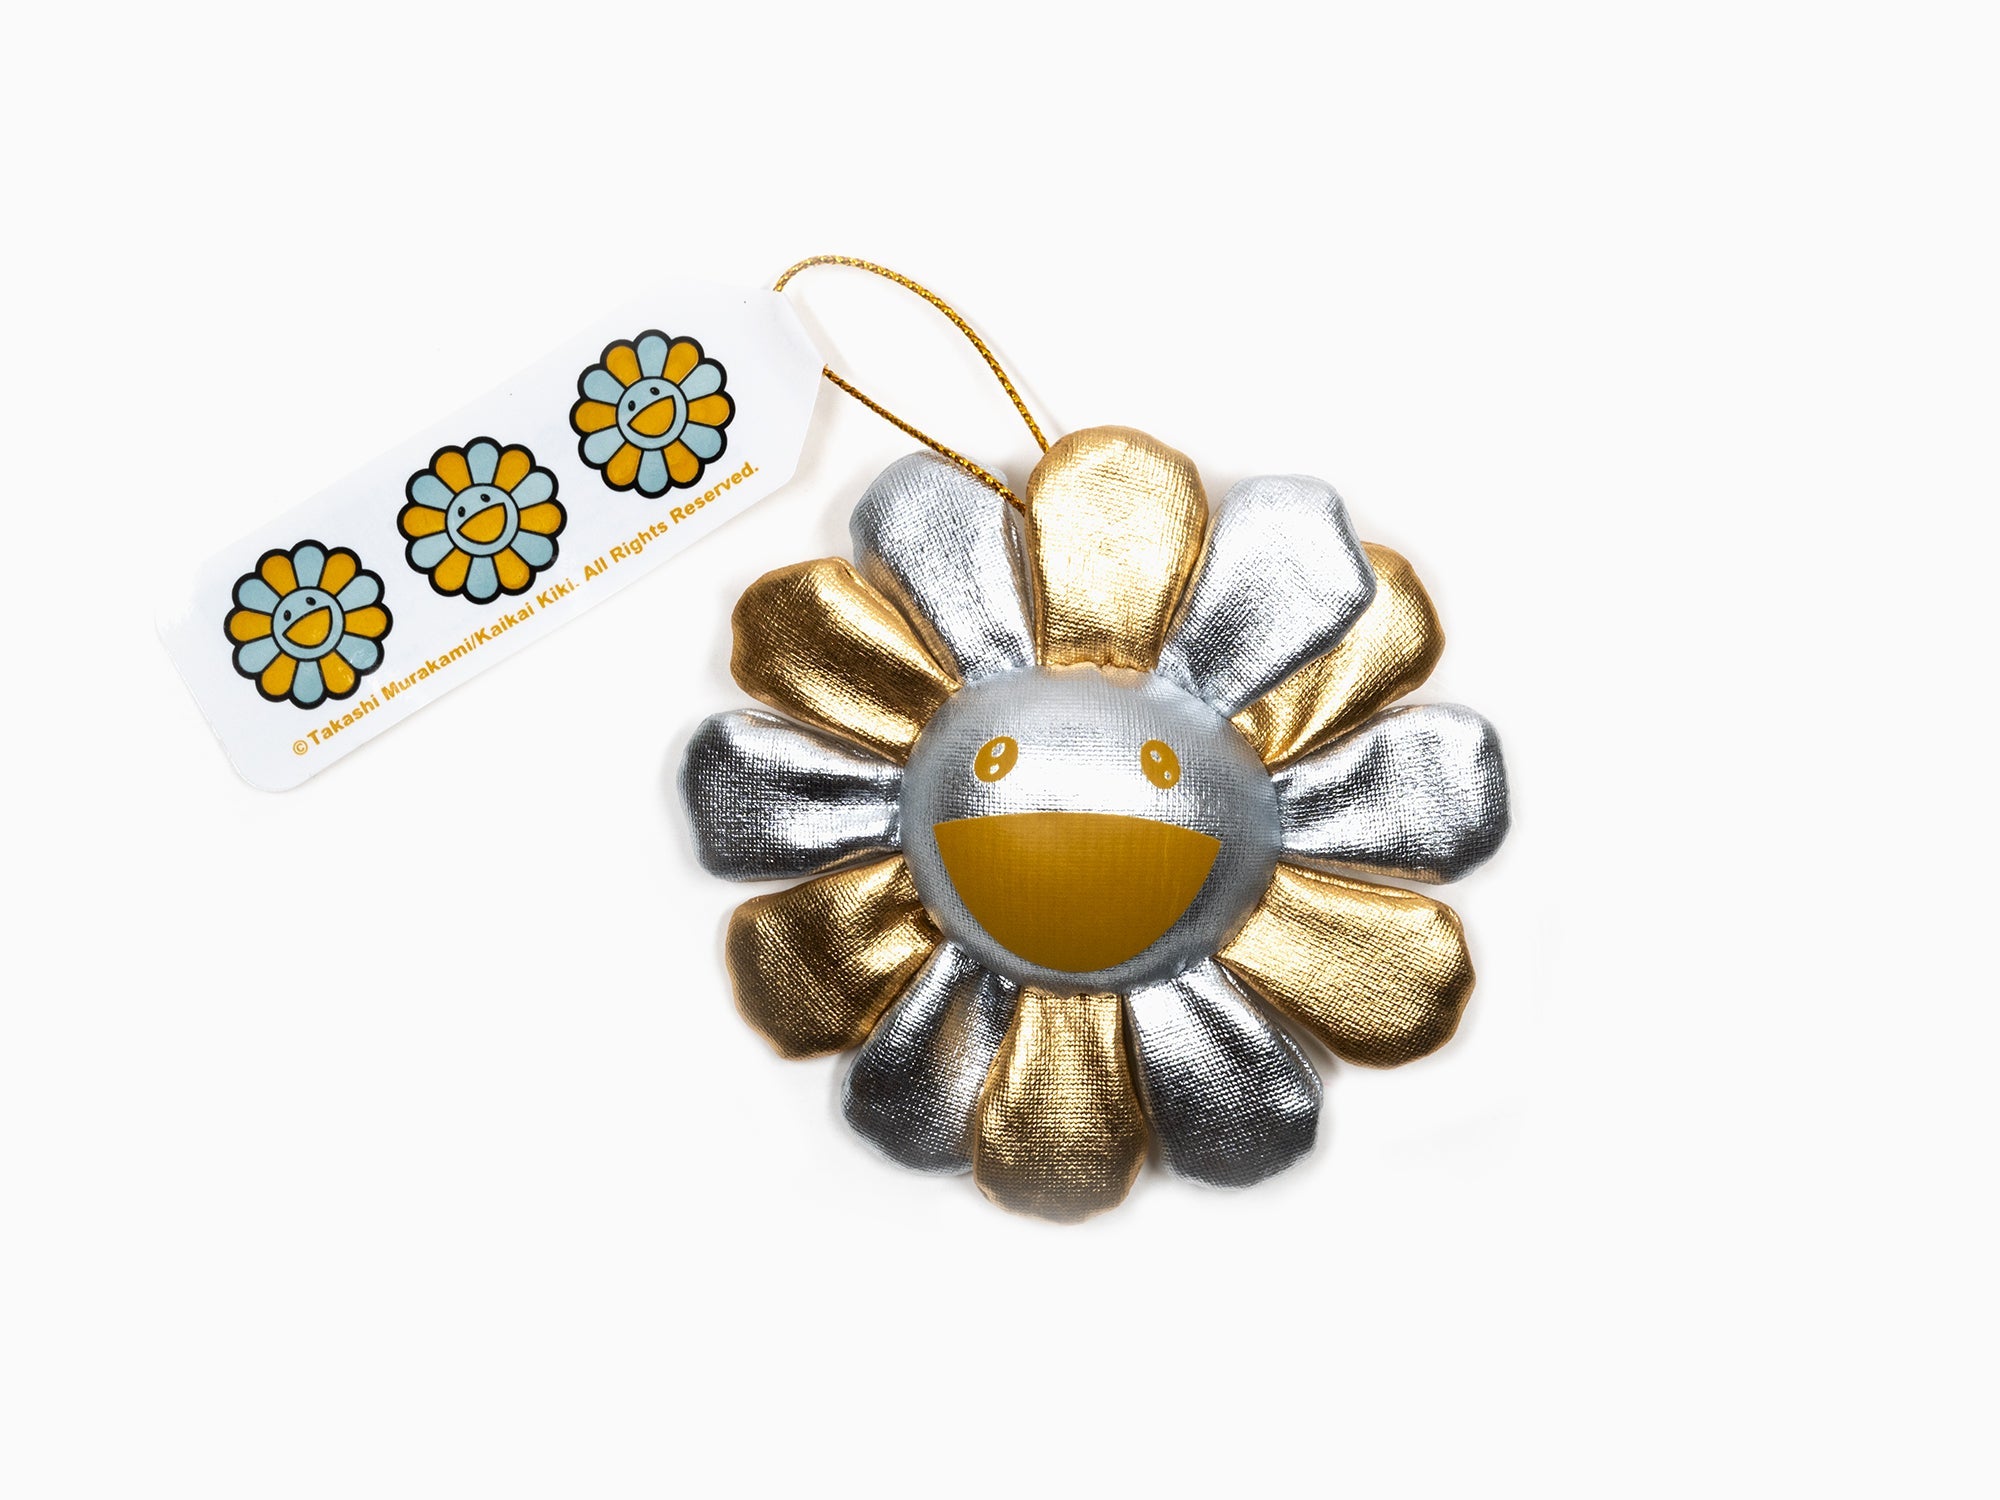 Takashi Murakami - Flower Plush Key Chain - Gold & Silver